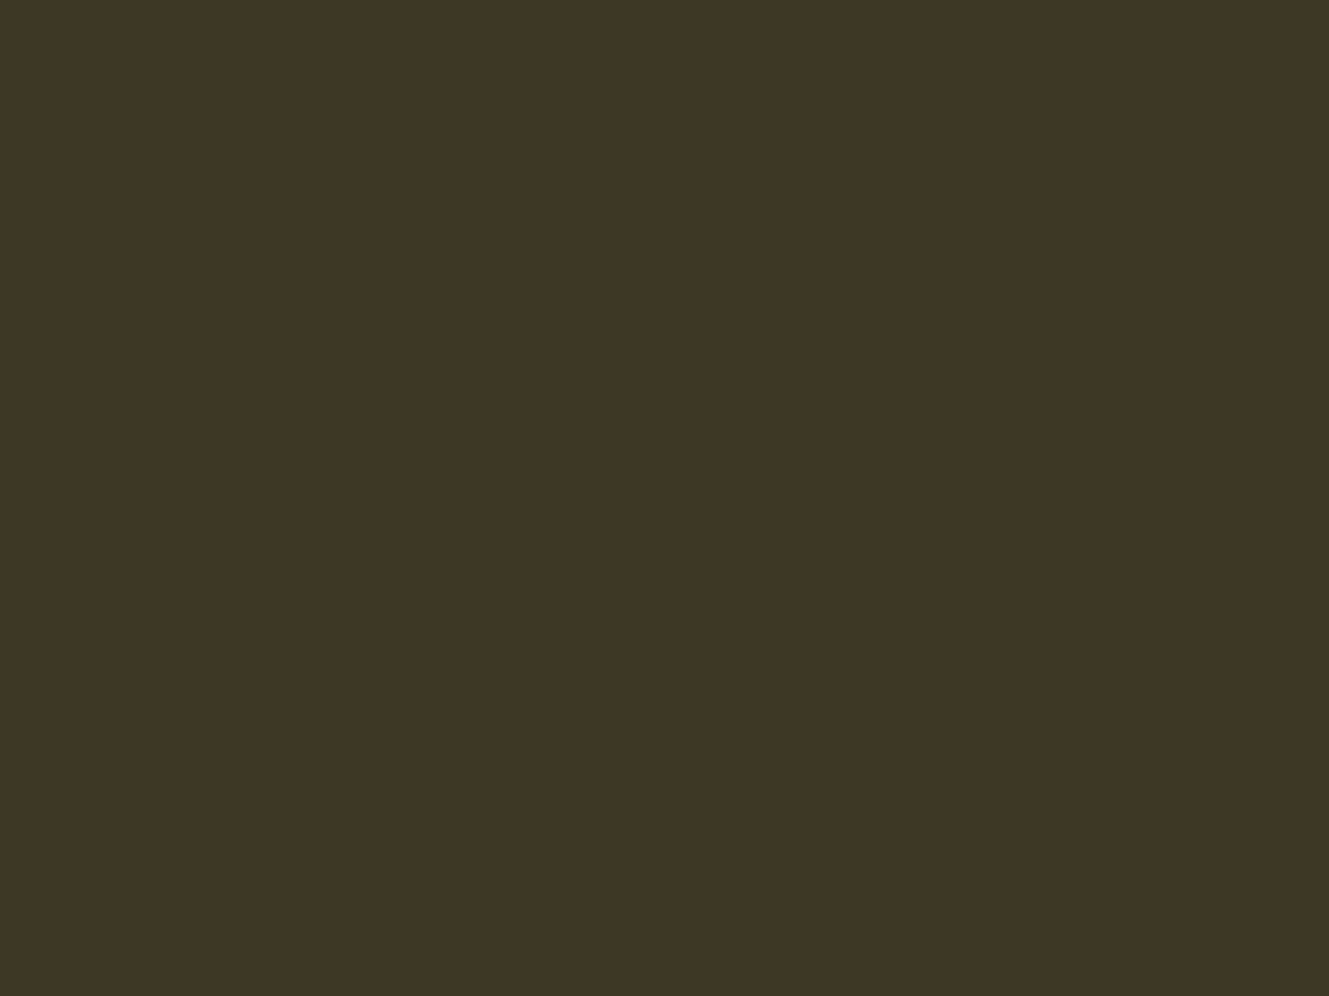 Григорий Мясоедов. Чтение Положения 19 февраля 1861 года (фрагмент). 1873. Государственная Третьяковская галерея, Москва